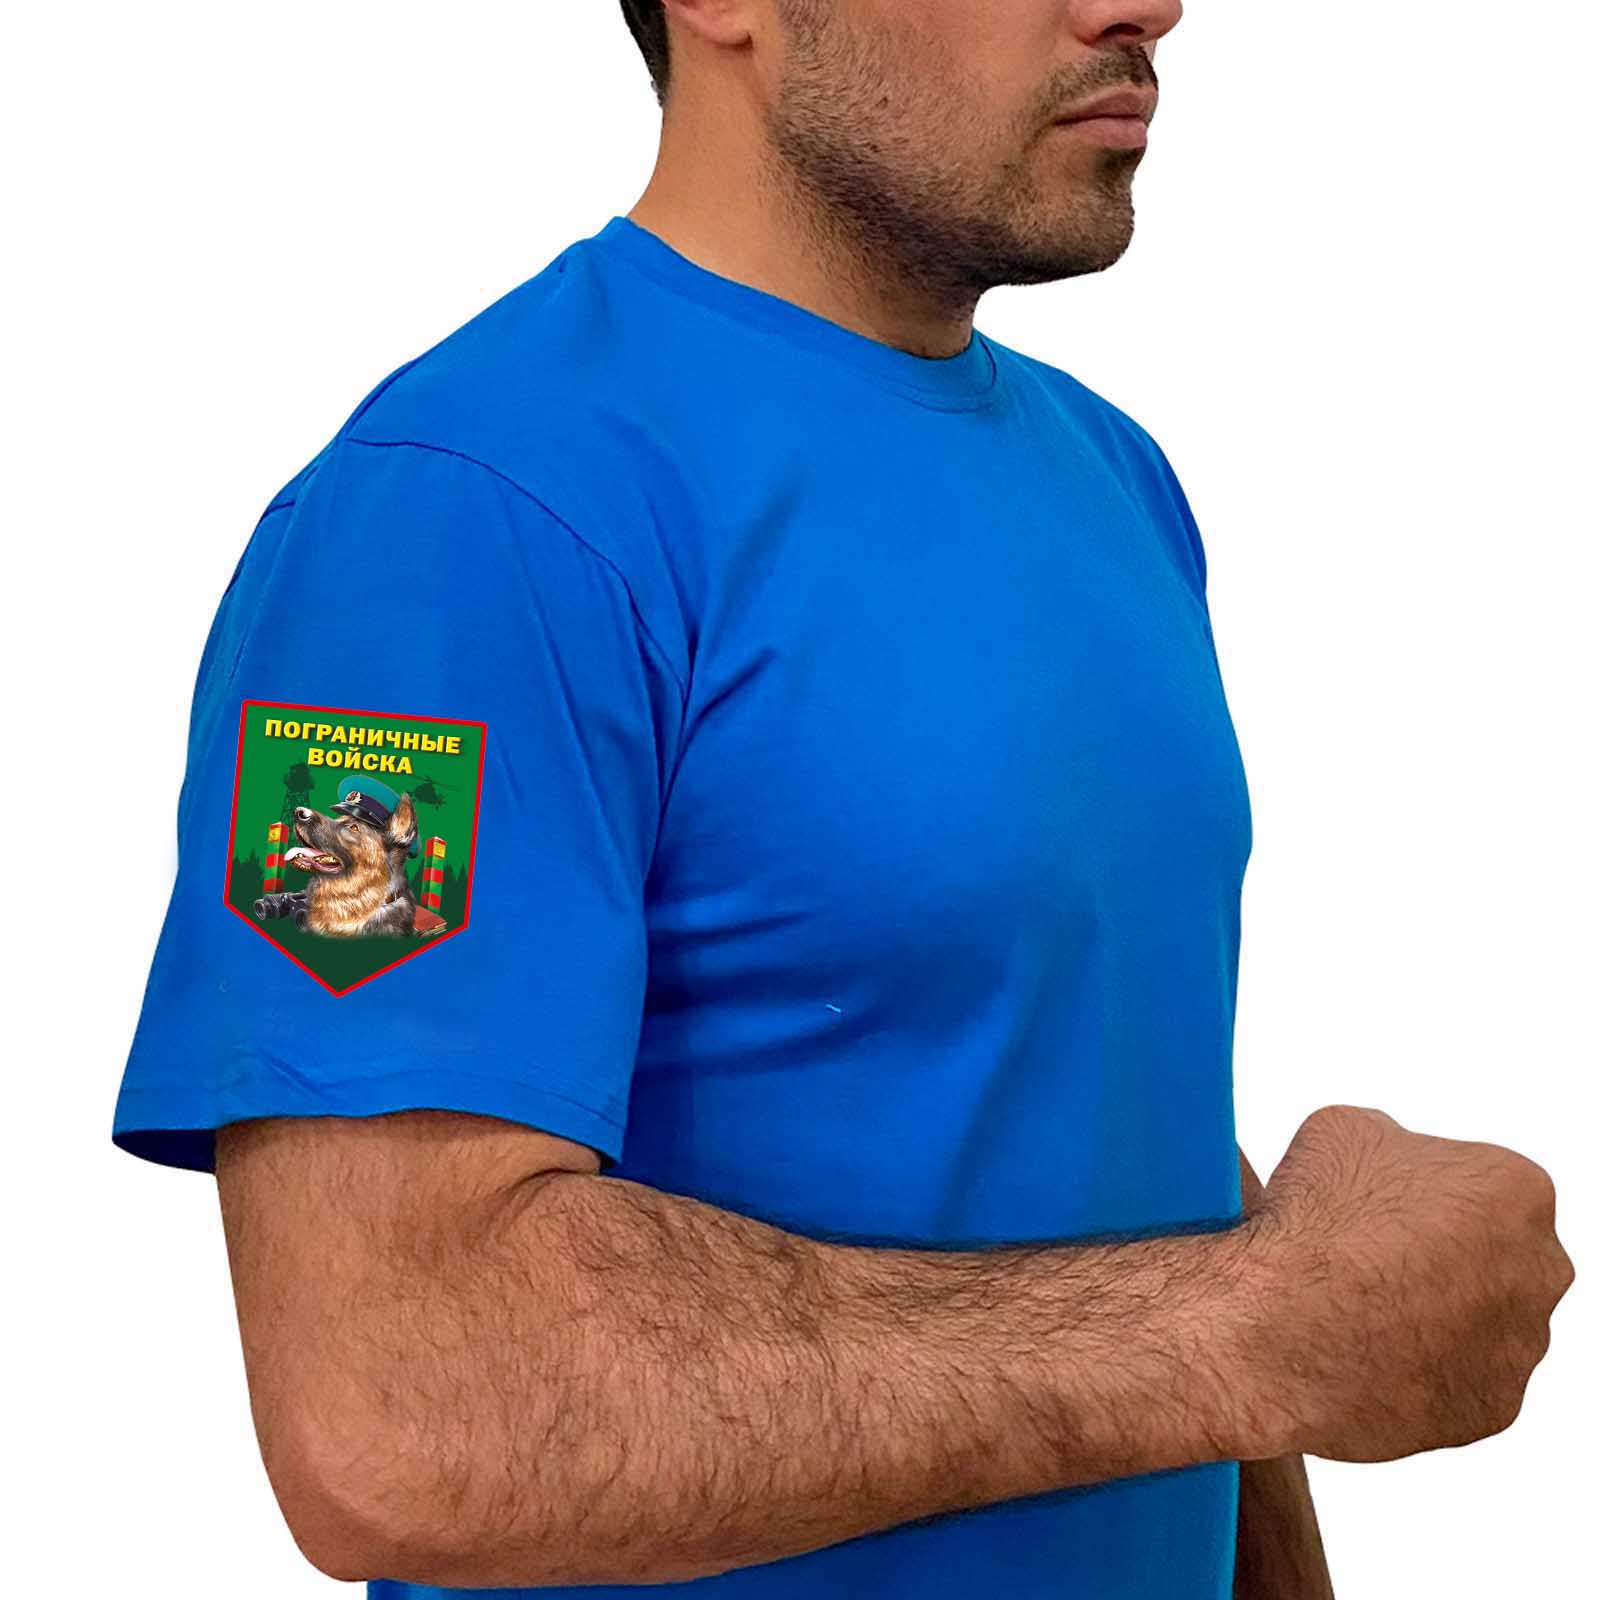 Васильковая футболка с термотрансфером "Пограничные войска" на рукаве